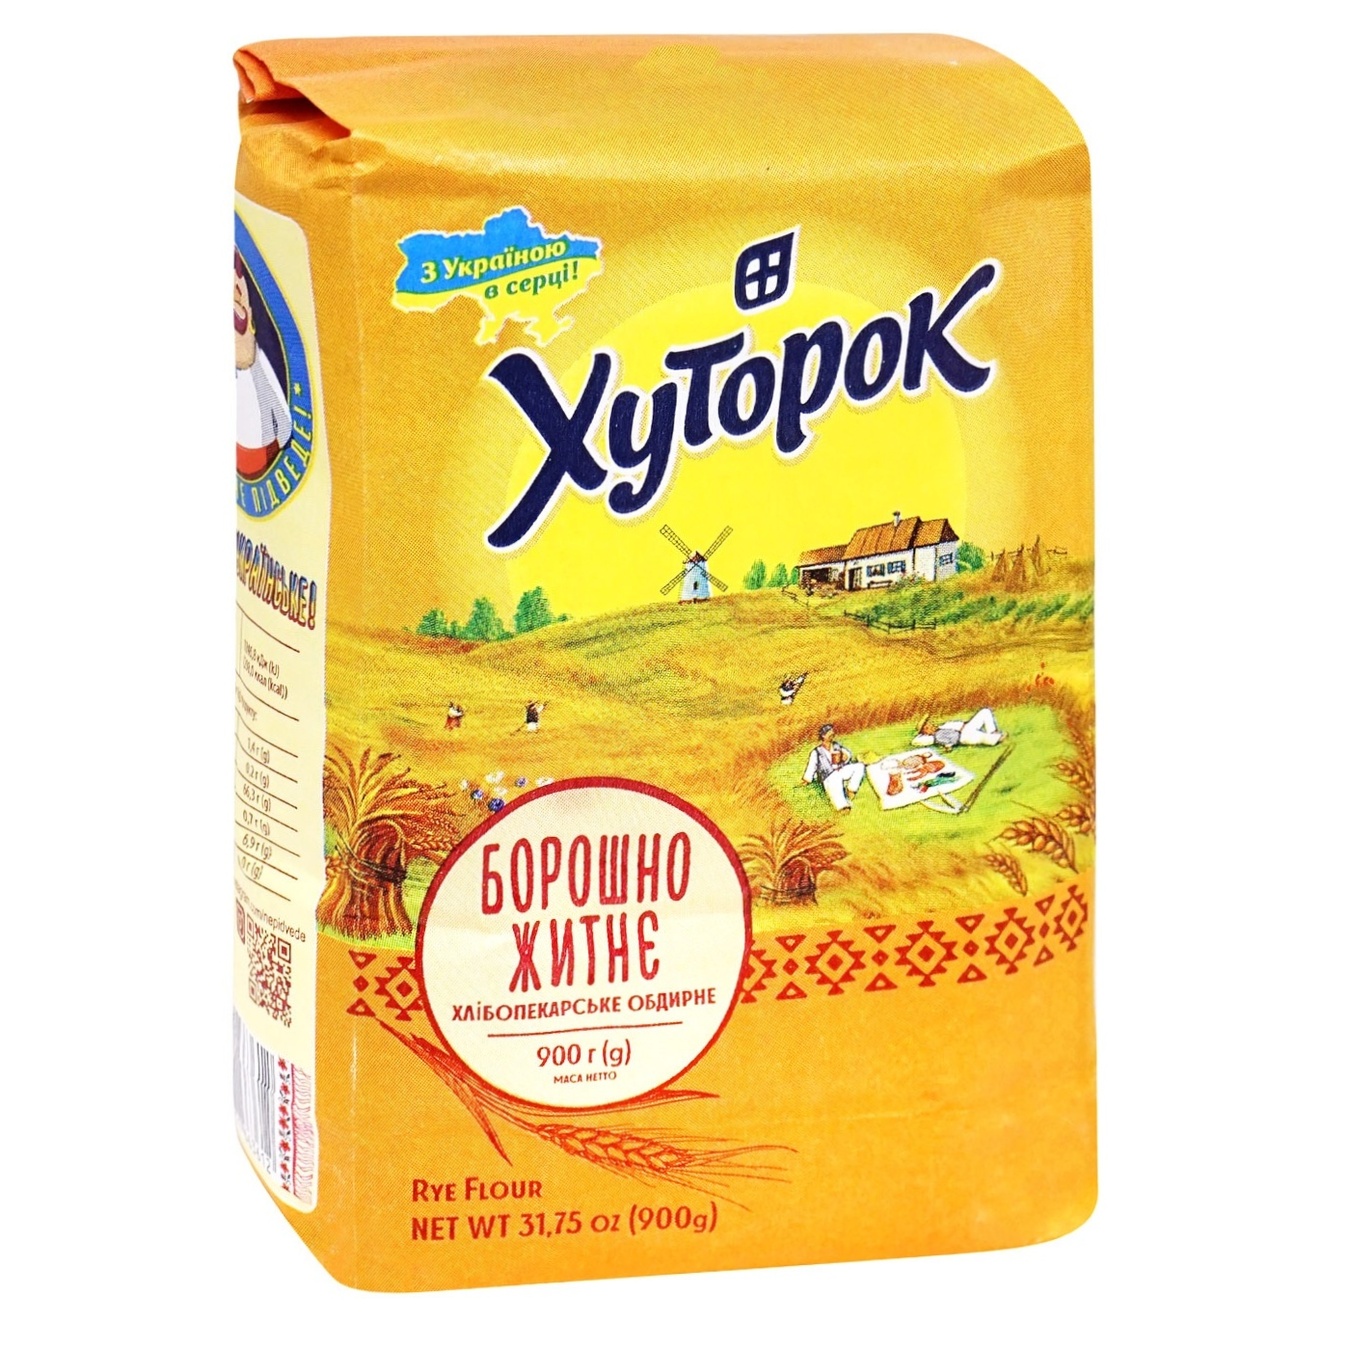 Khutorok rye flour 900g 3